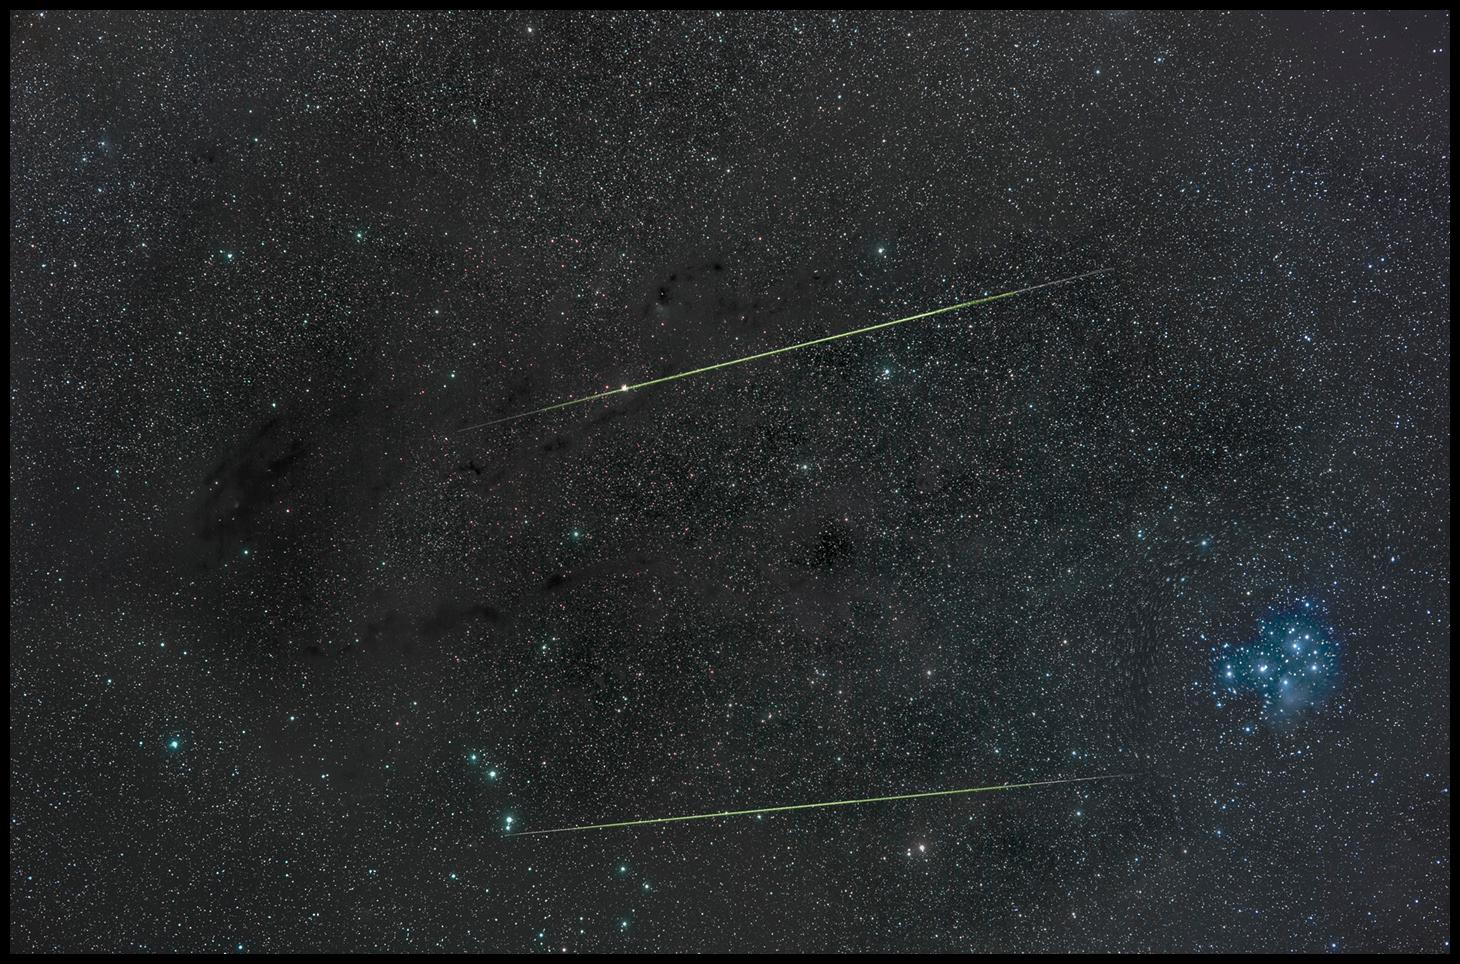 خطّان مخضرّان هما شهابان، على خلفيّة مرصّعة من النجوم تتخلّلها أغبرة عاتمة، بينما يظهر عنقود نجمي مزرقّ على اليمين هو الثريّا.